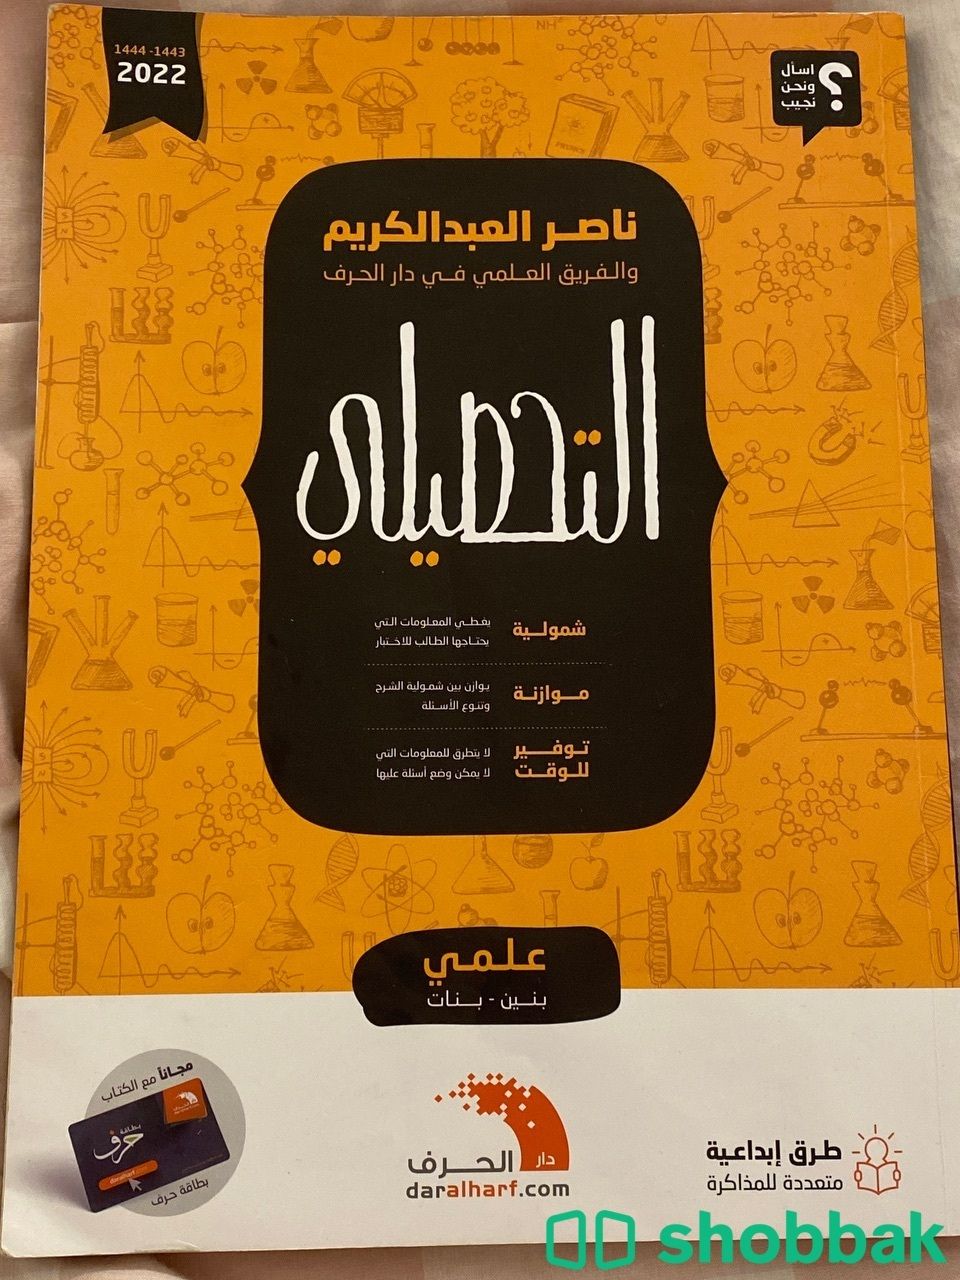 كتاب ناصر عبد الكريم تحصيلي2022 Shobbak Saudi Arabia